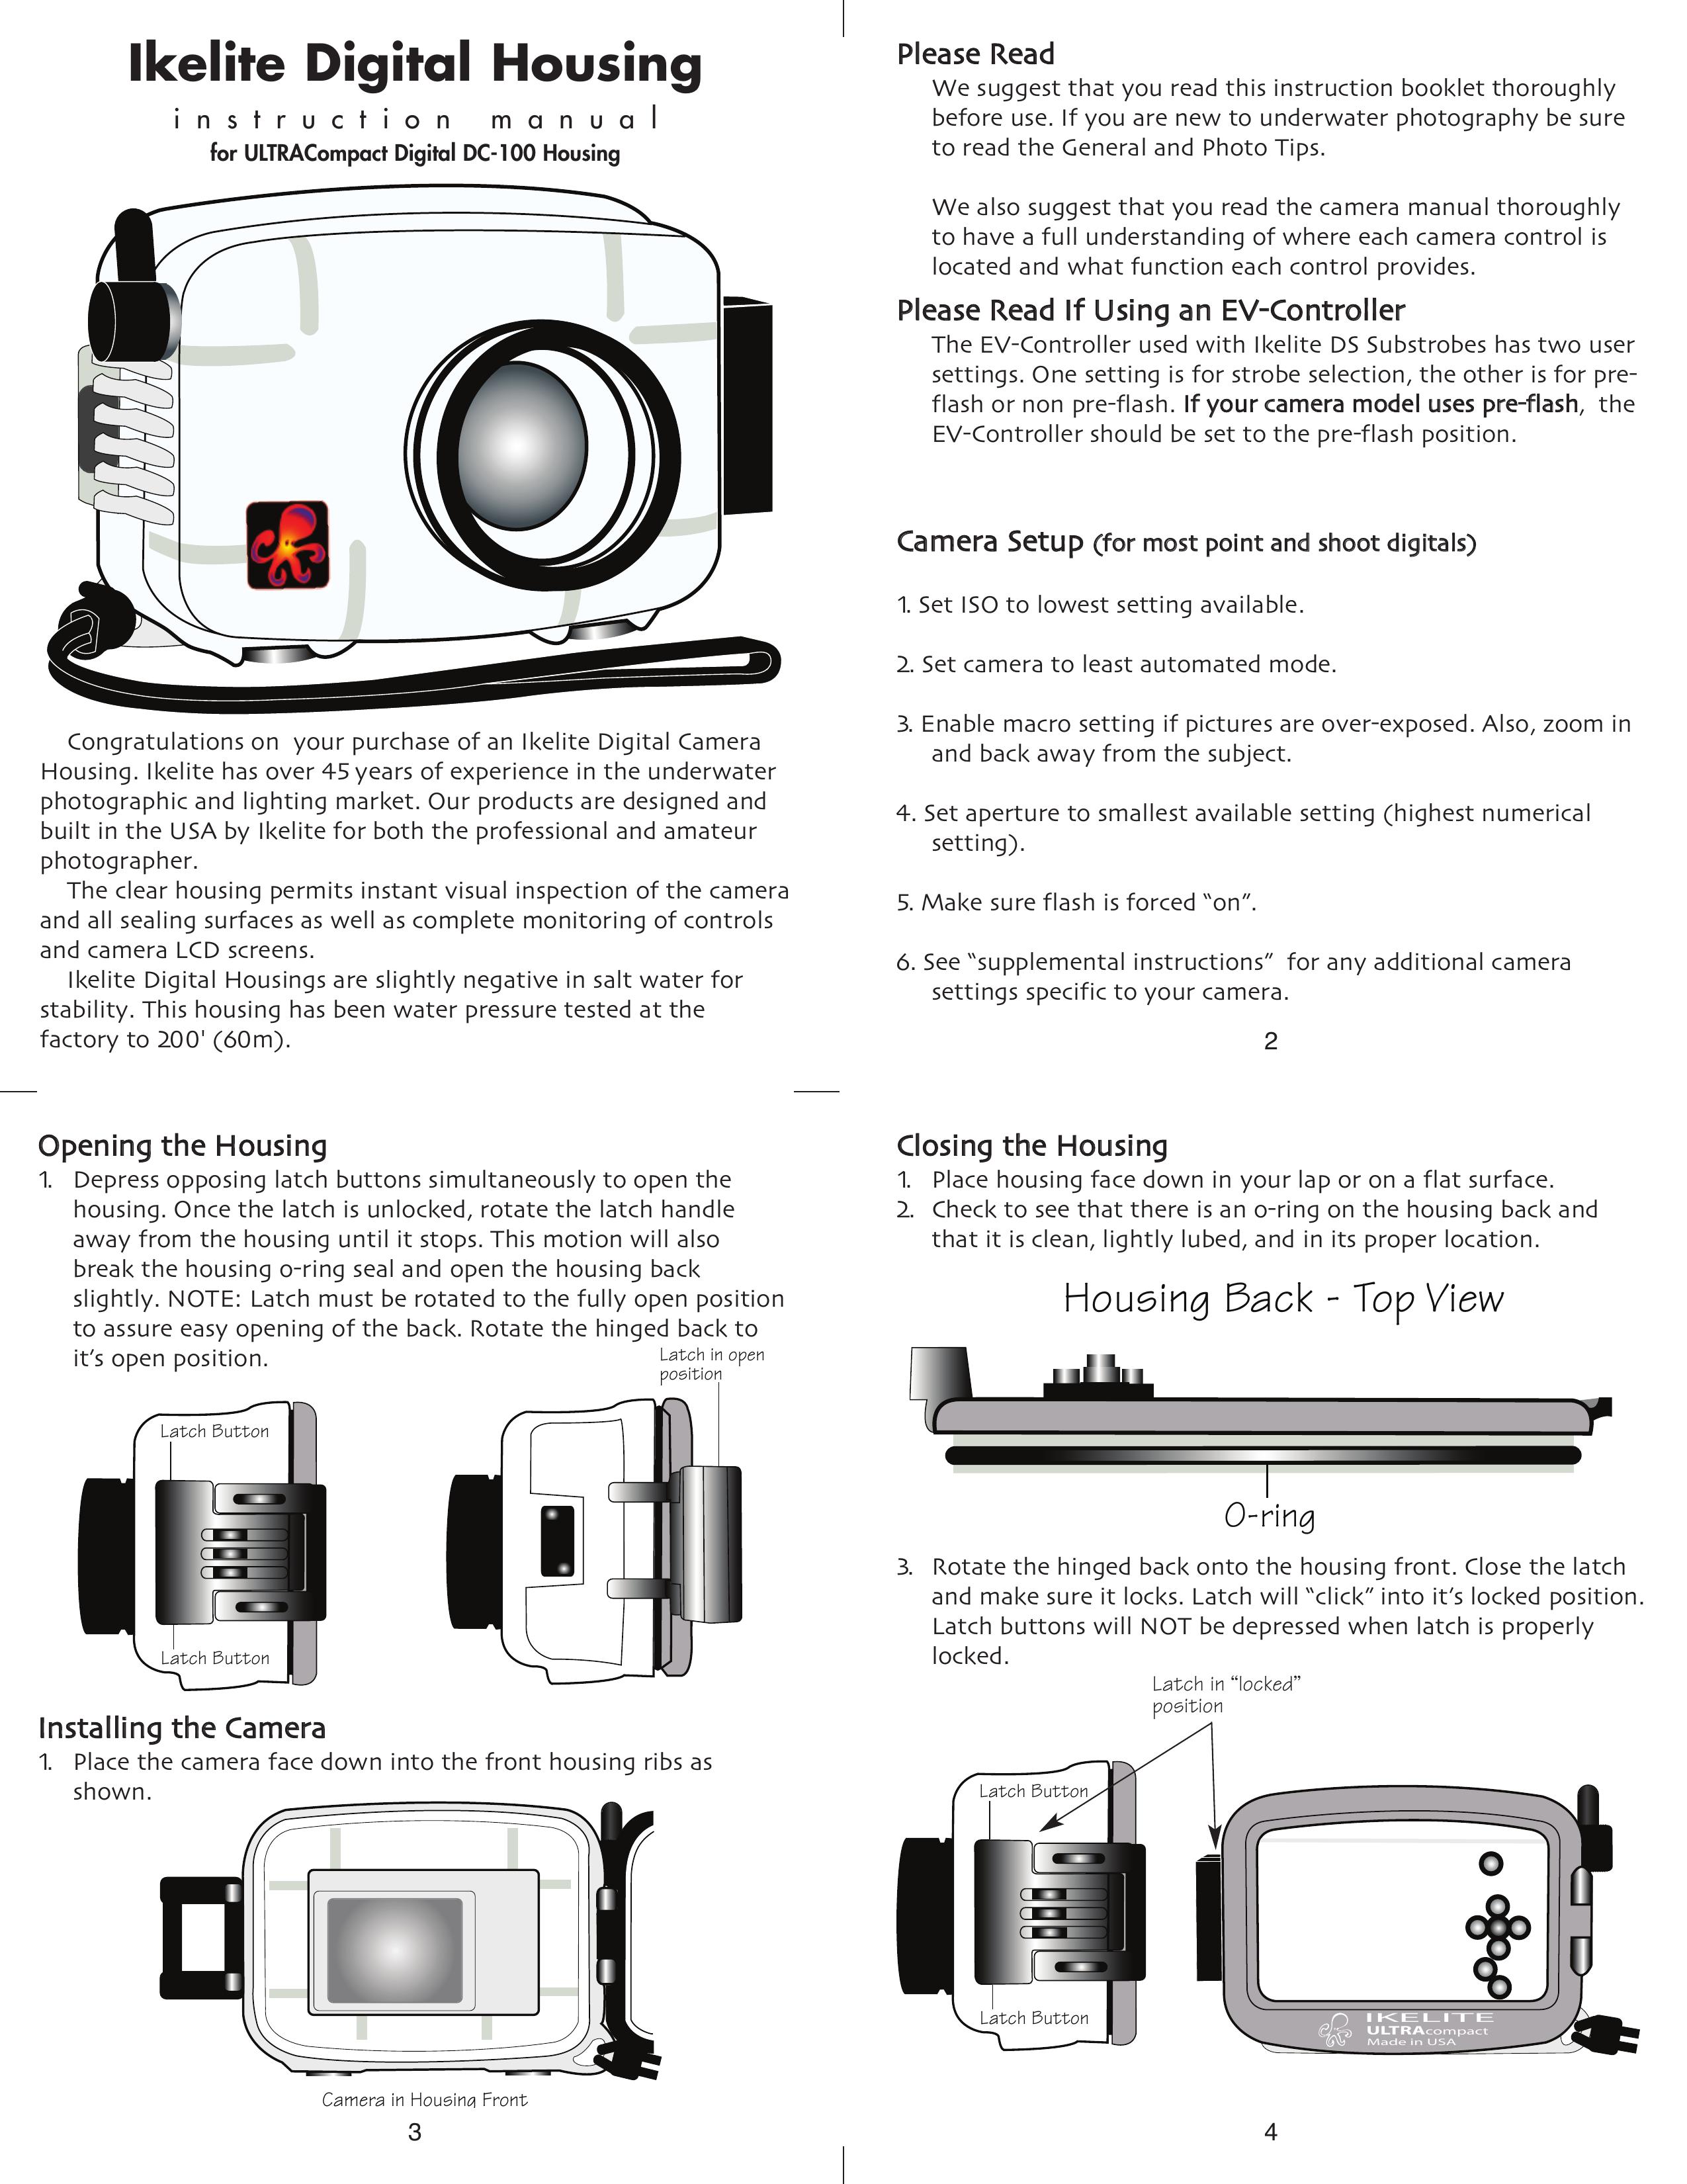 Ikelite ALL Digital Camera User Manual